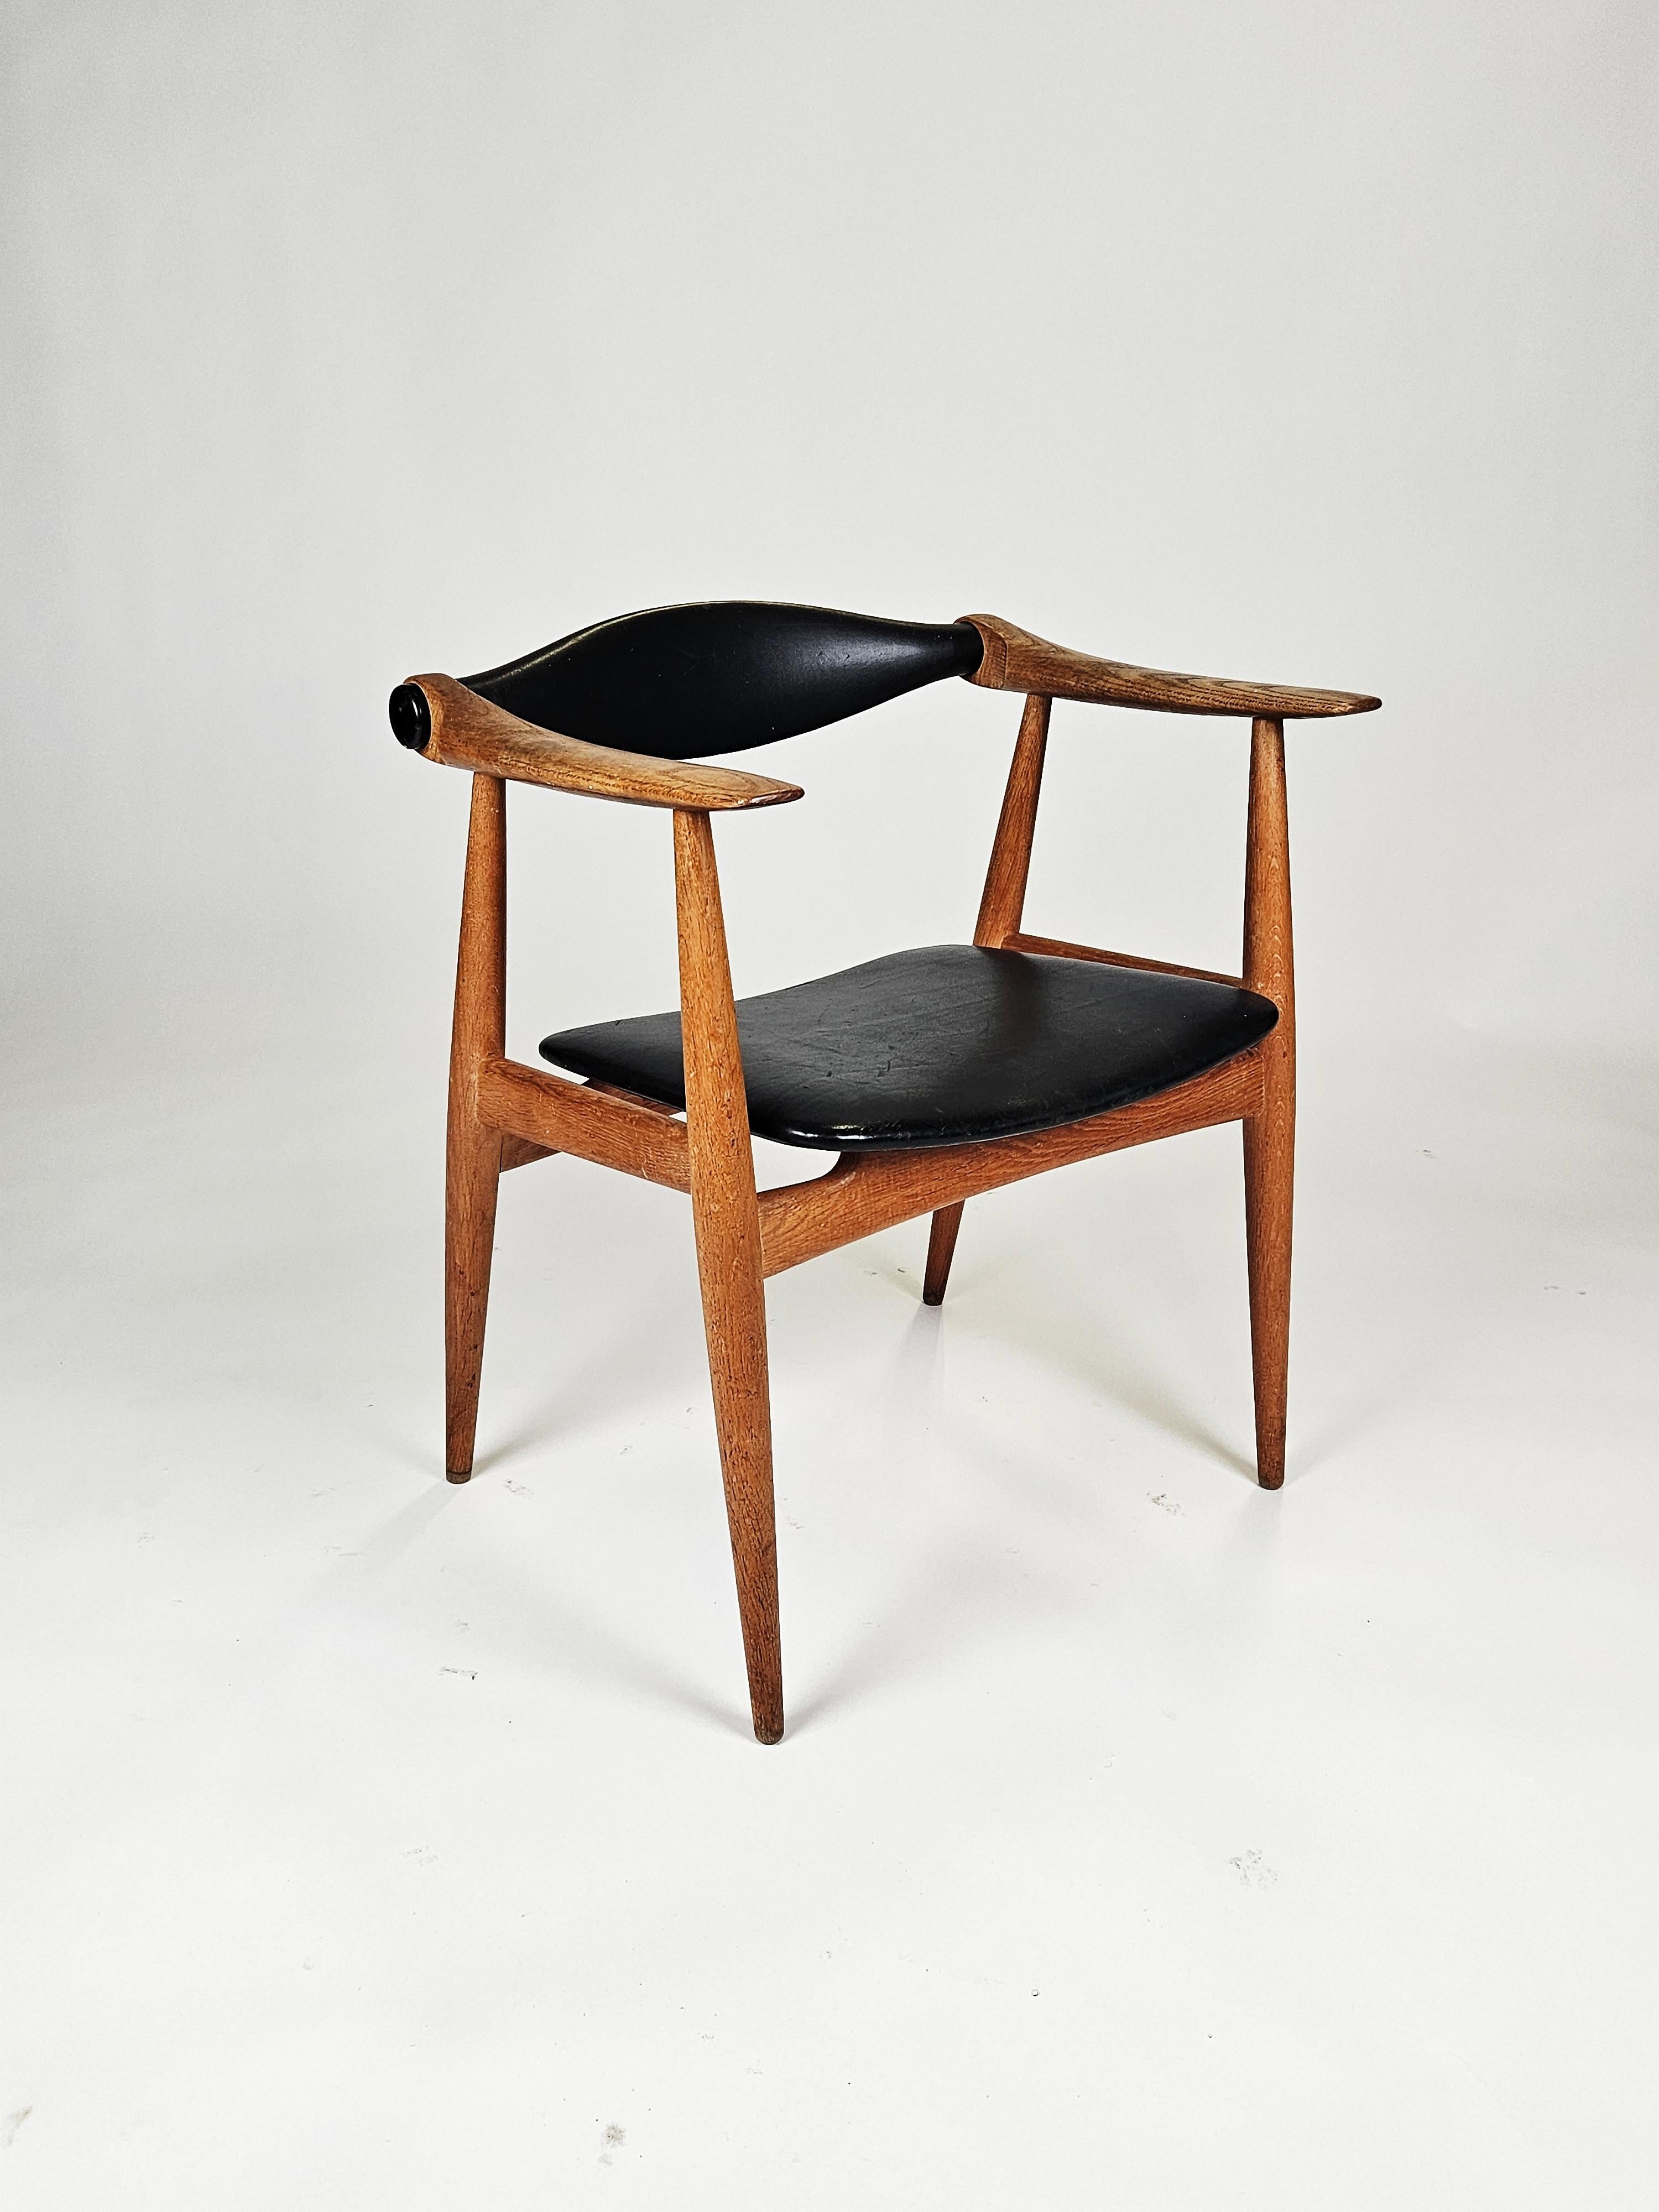 Seltener Sessel aus Eiche und Leder, Modell 'CH-34', entworfen von Hans J. Wegner und hergestellt von Carl Hansen & Son, Dänemark, 1960er Jahre. 

Hergestellt aus massiver Eiche mit konischen Beinen. Original schwarze Lederpolsterung. Tolle